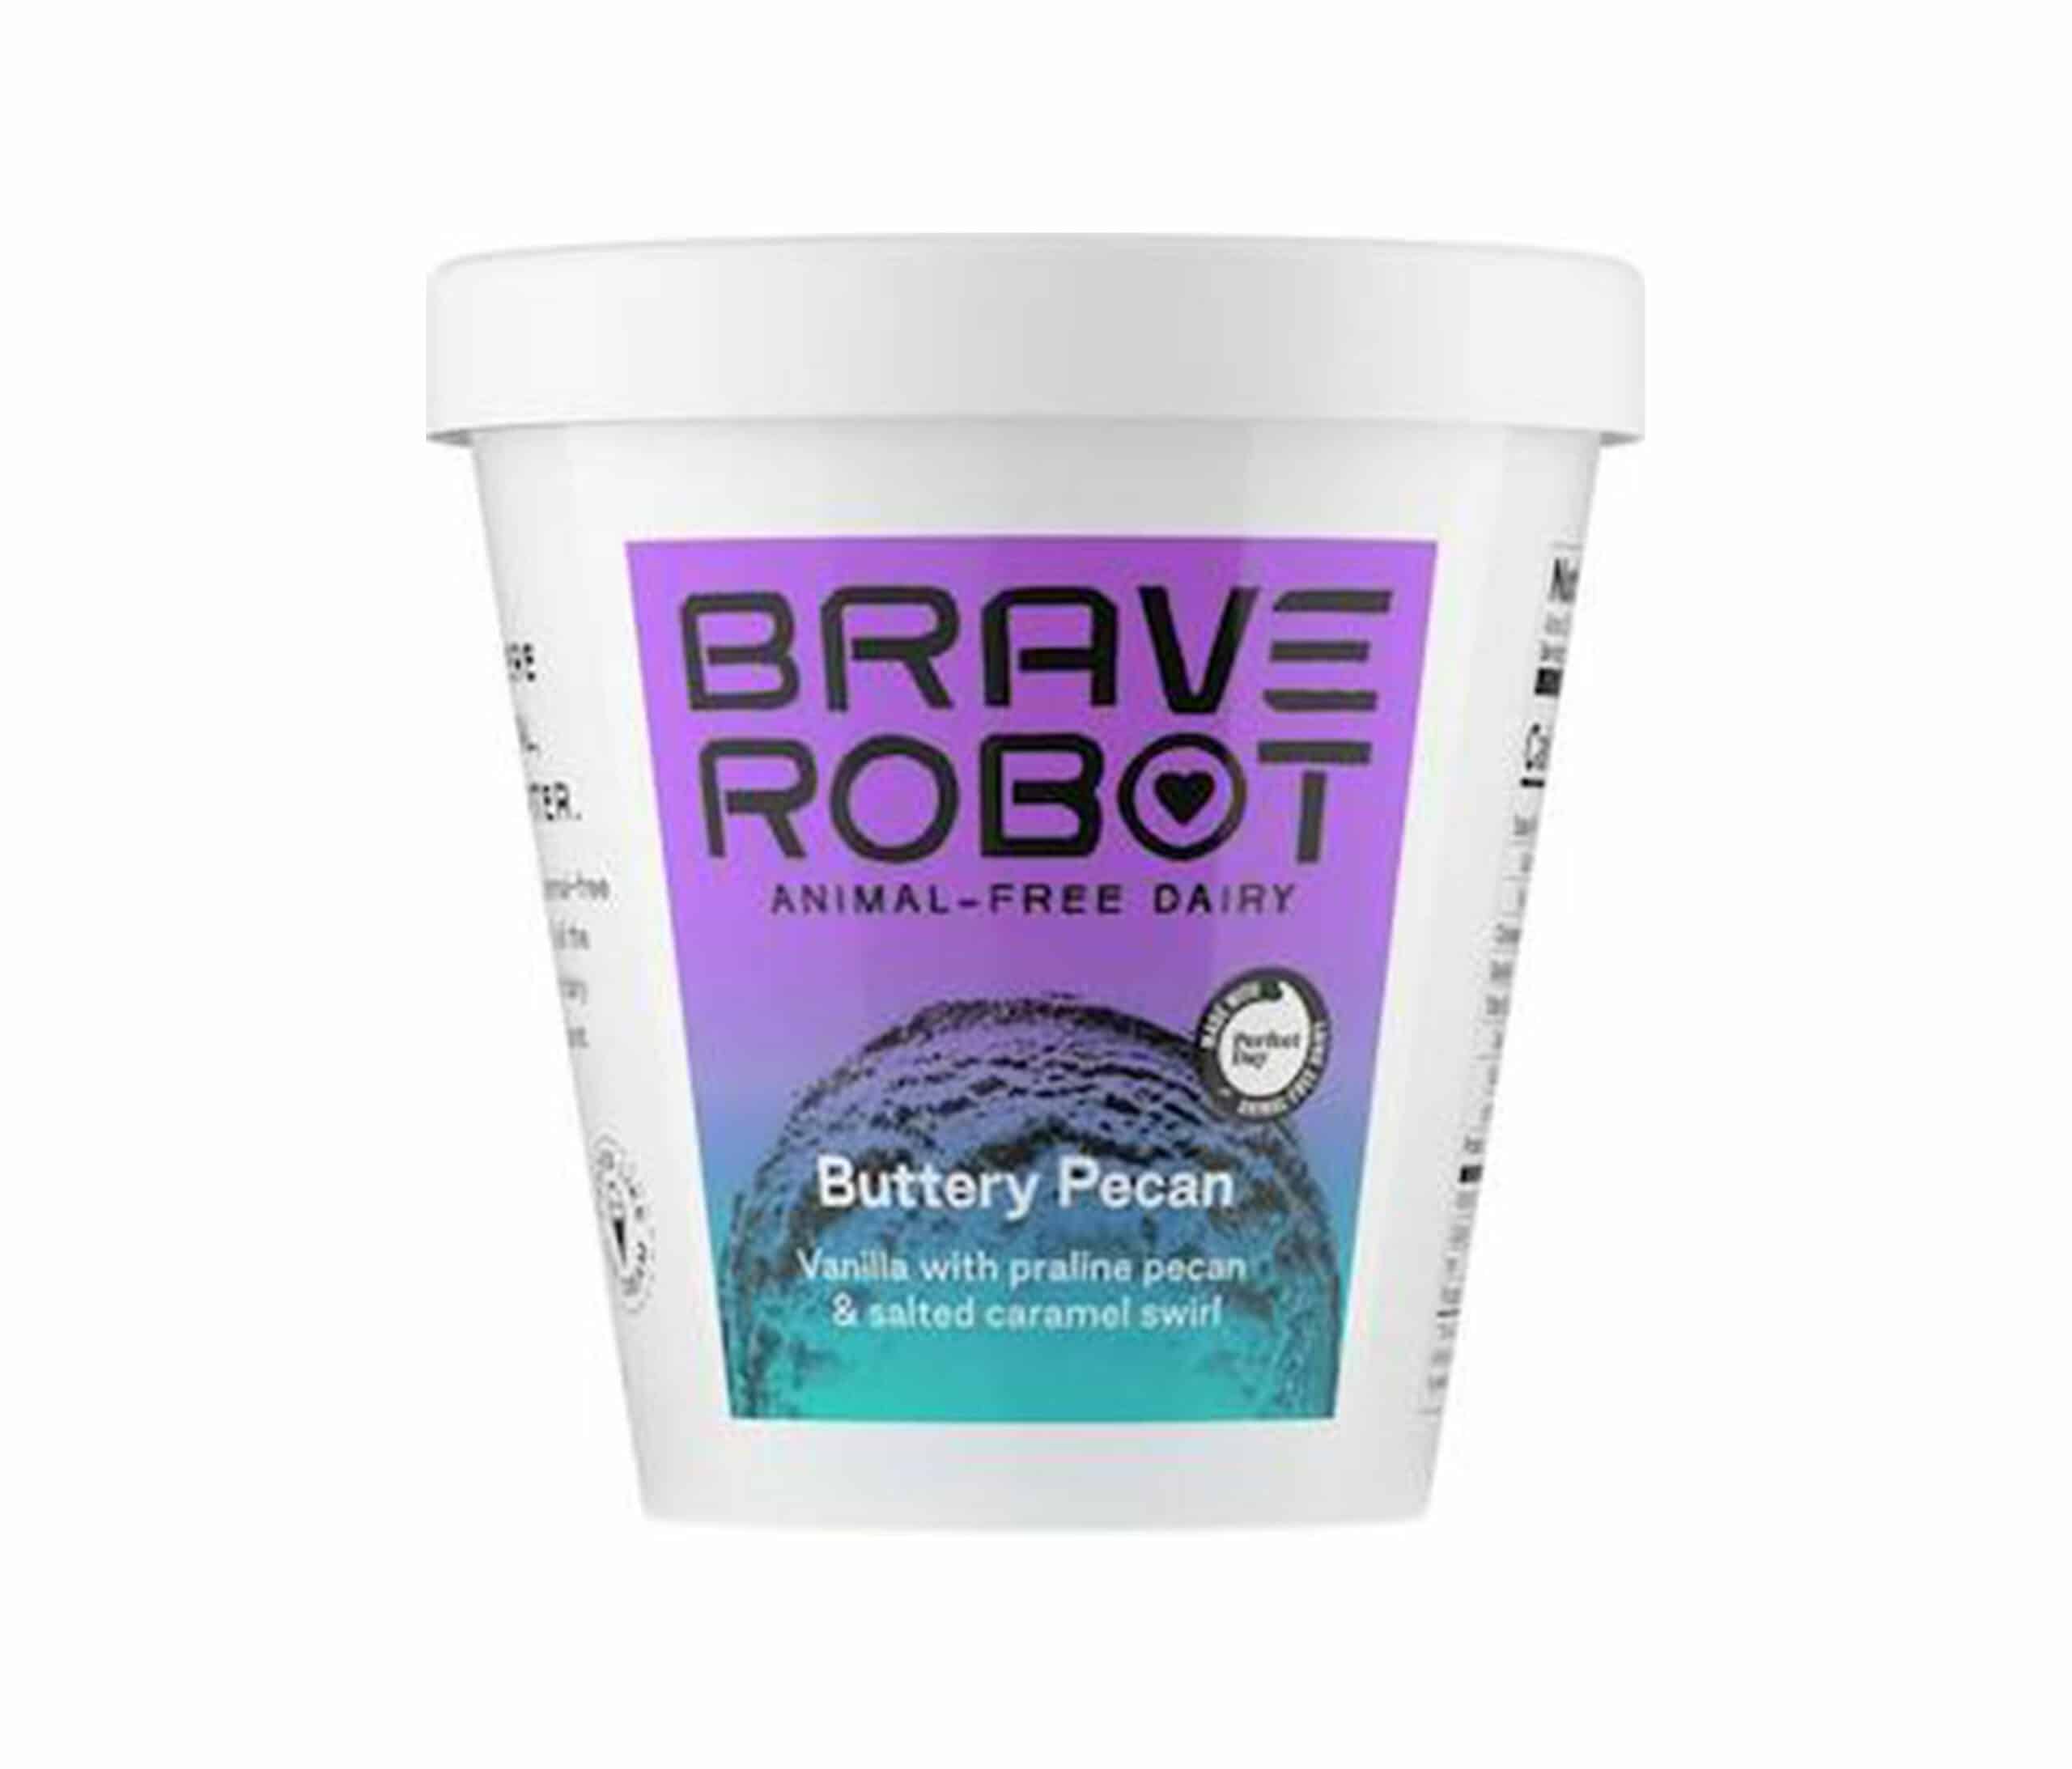 brave robot icecream